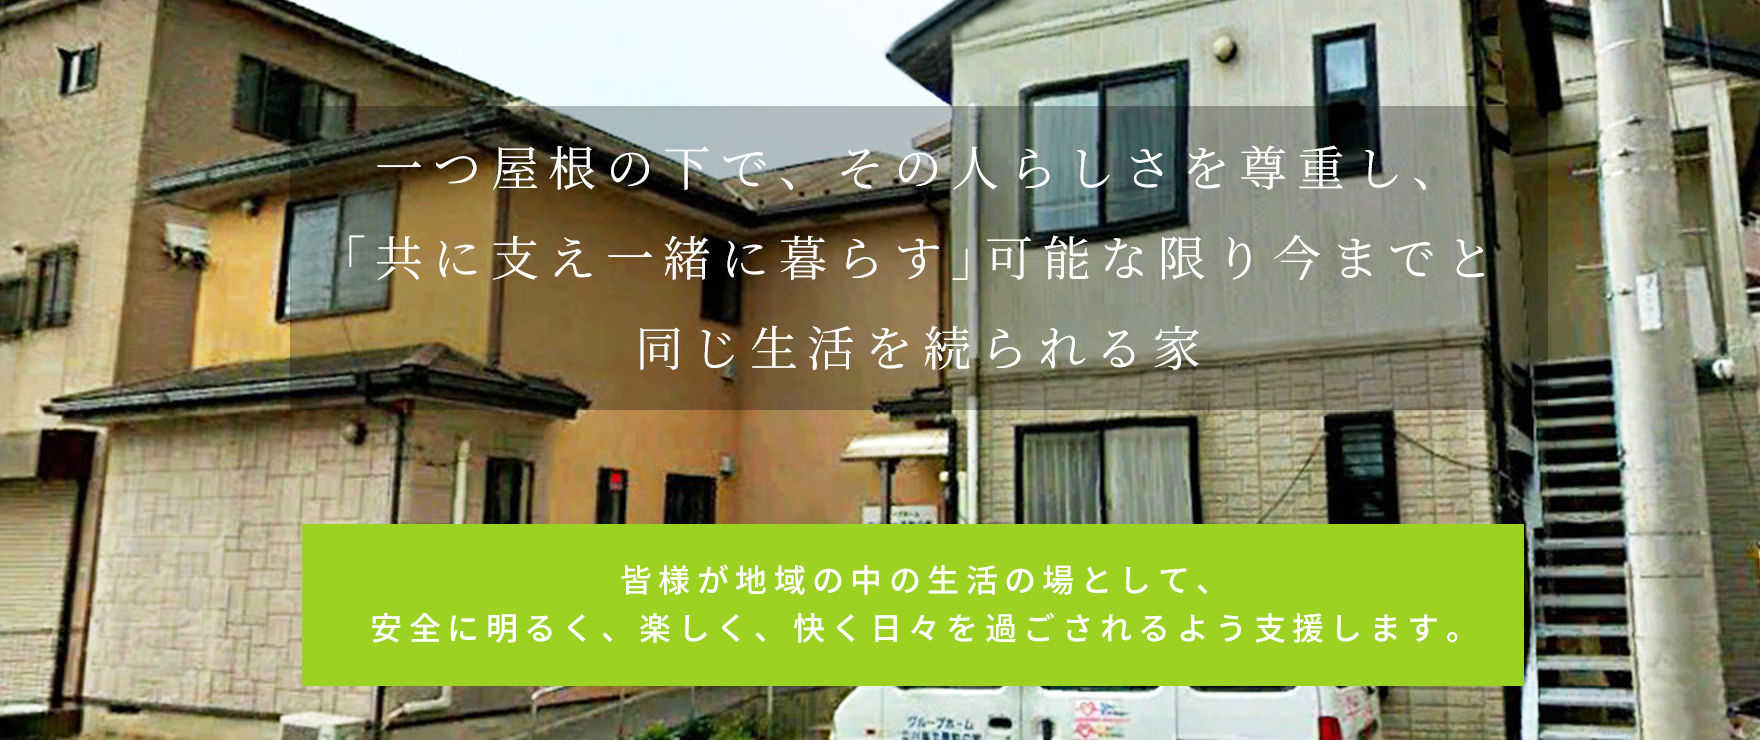 グループホーム立川富士見町の家